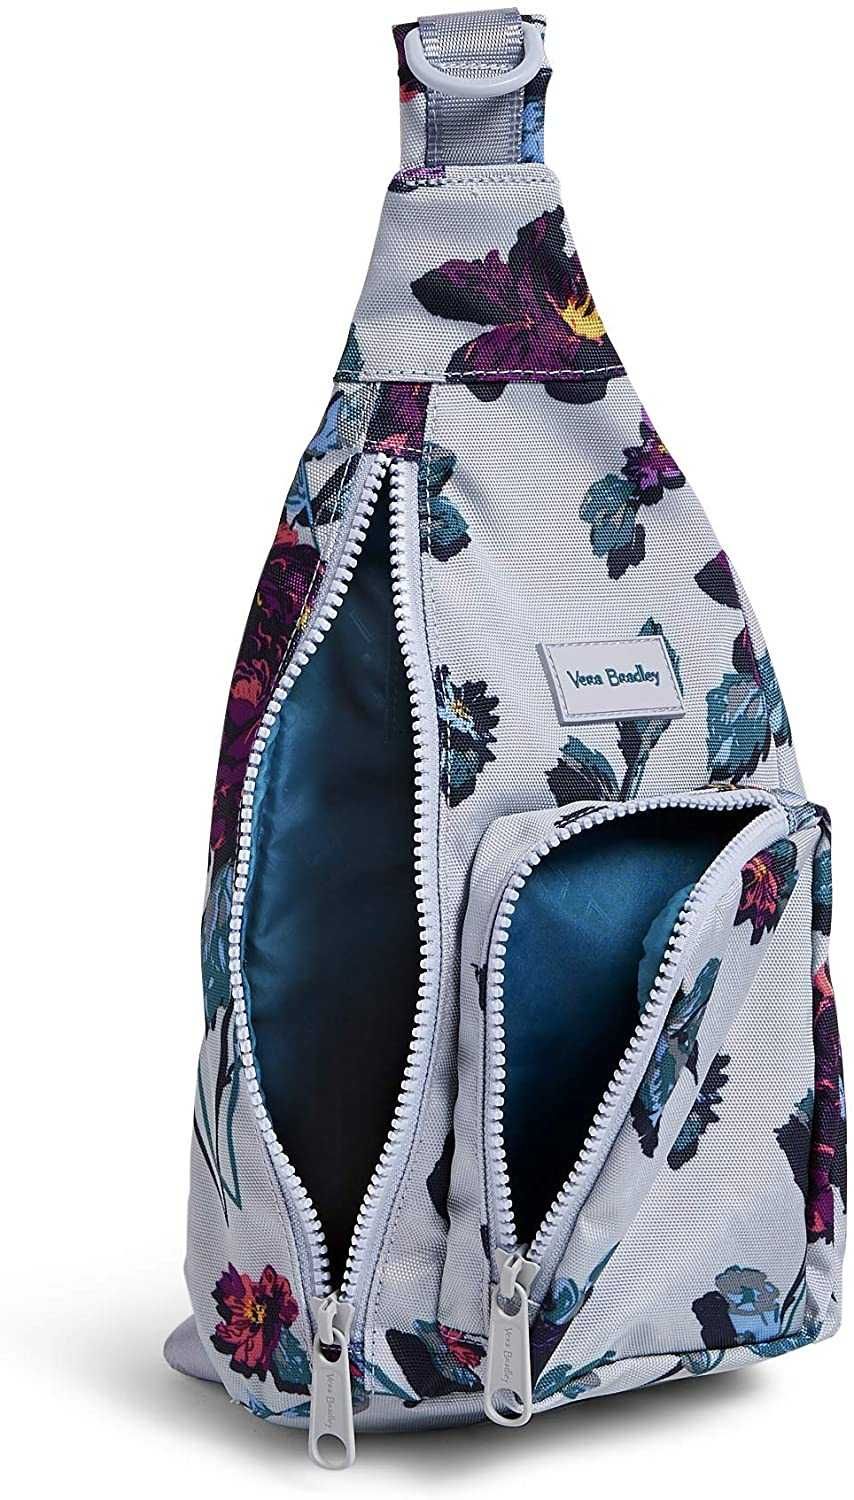 Мини слинг-рюкзак Vera Bradley Recycled Mini Sling Backpack!